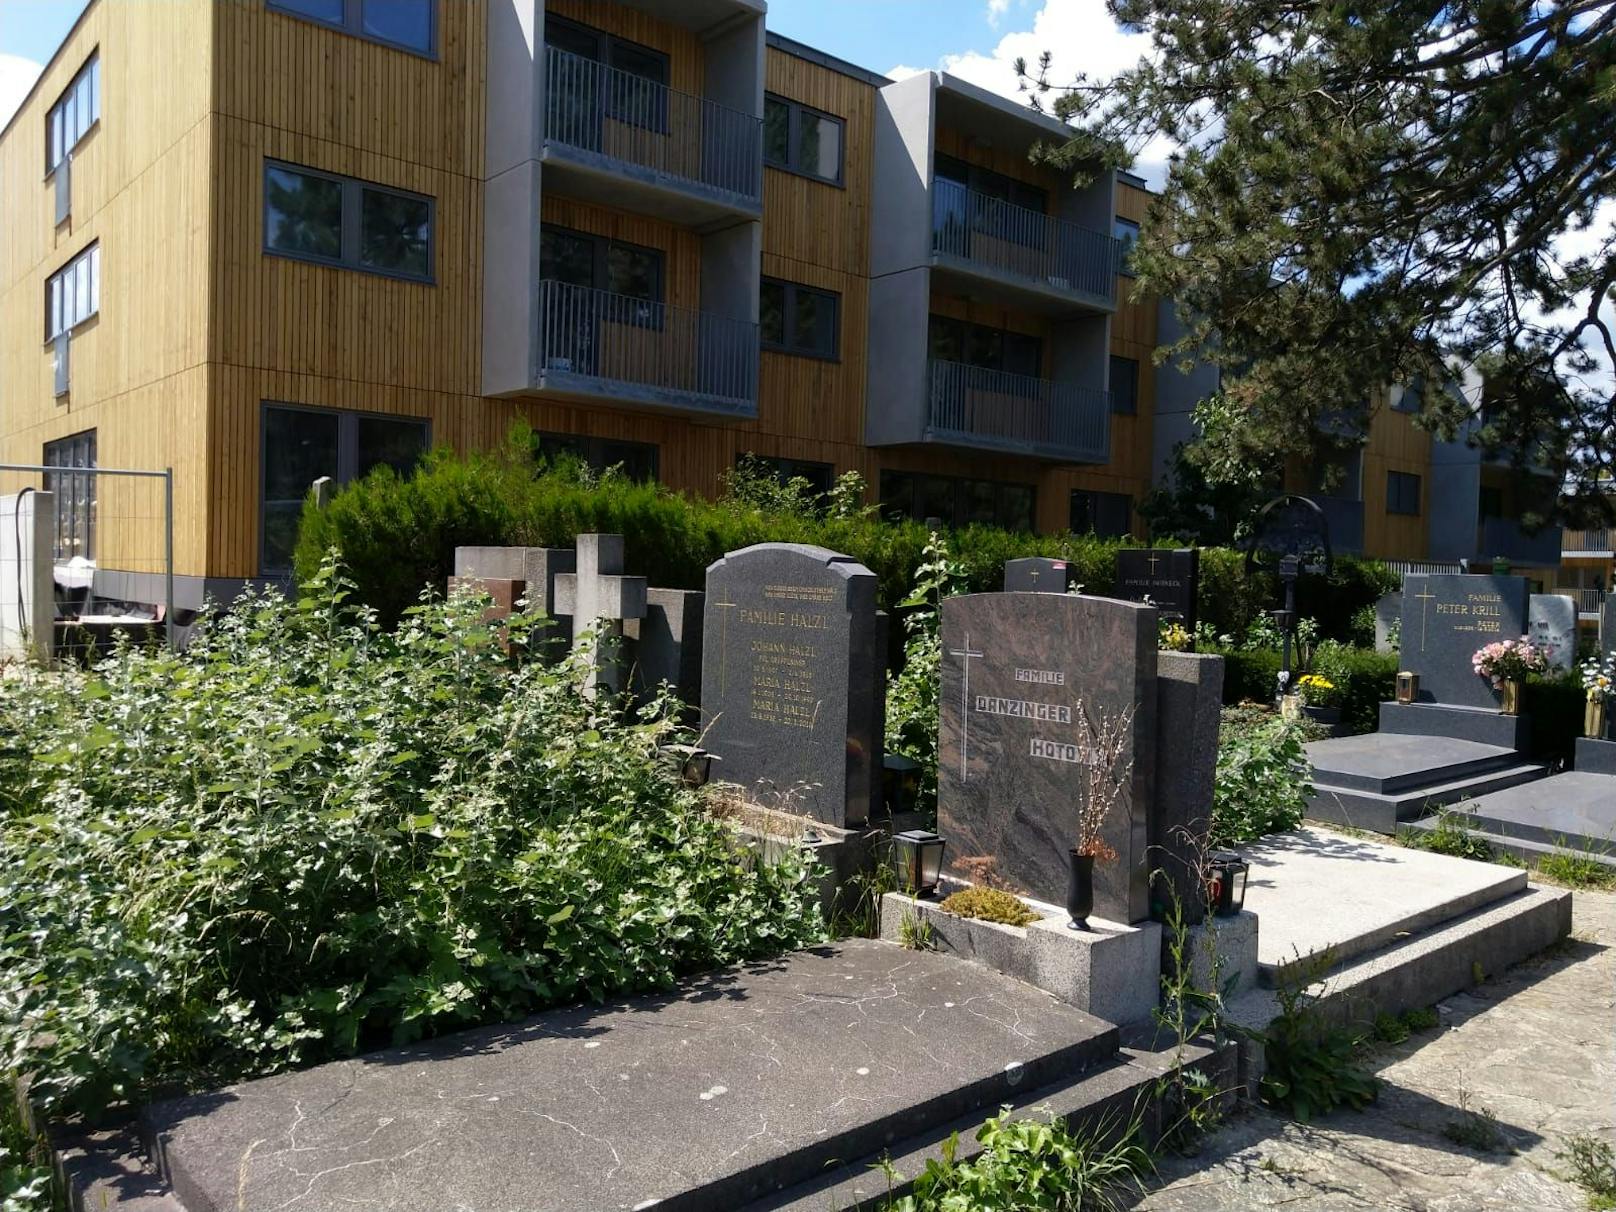 2010 wurde der Neustifter Friedhof zu Wiens 1. Umweltfriedhof, nur vier Jahre später entdeckte die Stadt das Potential für den Wohnbau. Der Bau der 70 geförderten Wohnungen, die nun kurz vor der Übergabe stehen, sorgen für Ärger bei den Anrainern.